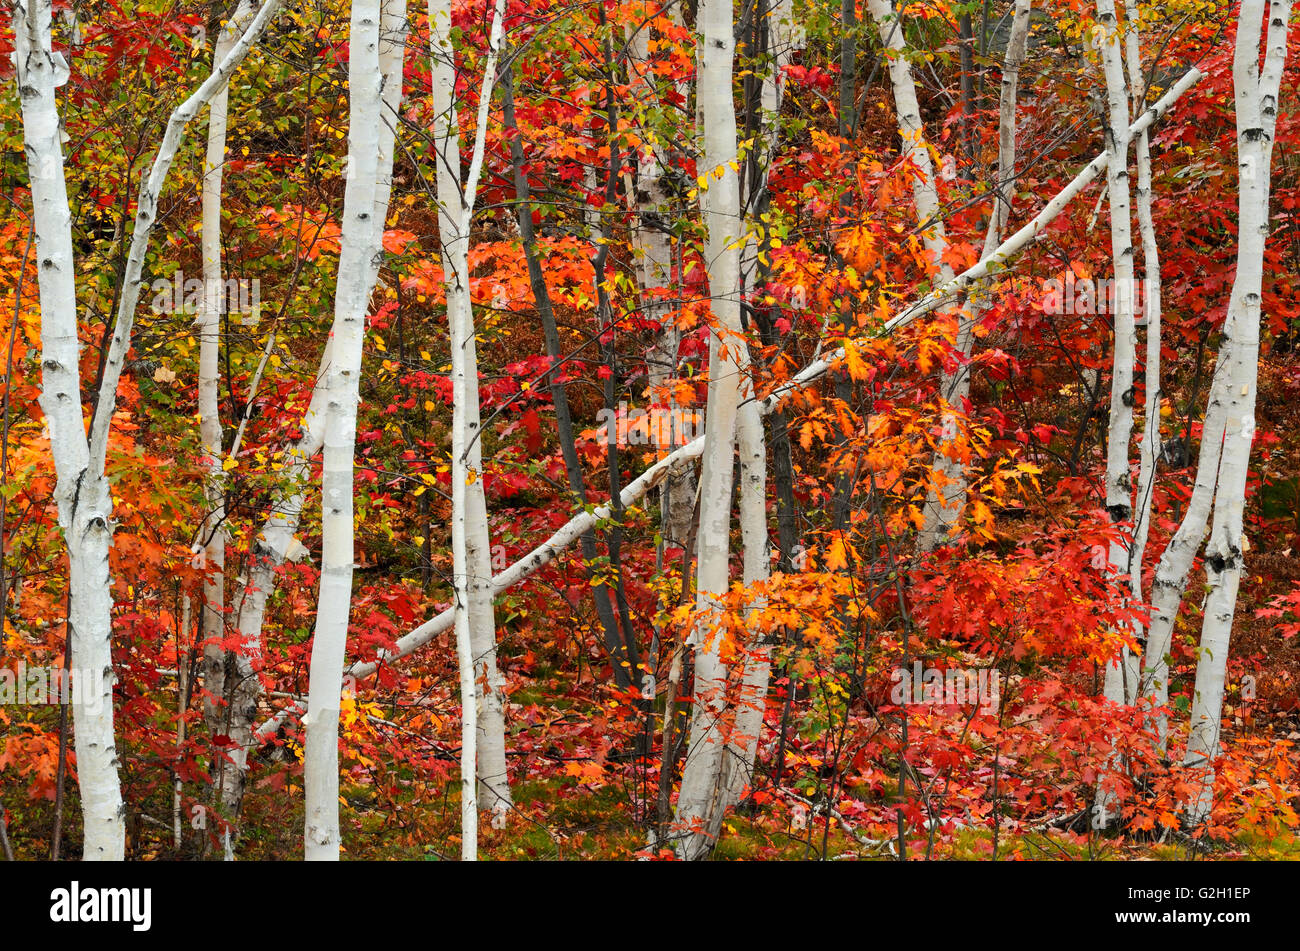 Papier-Birken und Ahornbäume im Herbst Farbe Sudbury Ontario Kanada Stockfoto